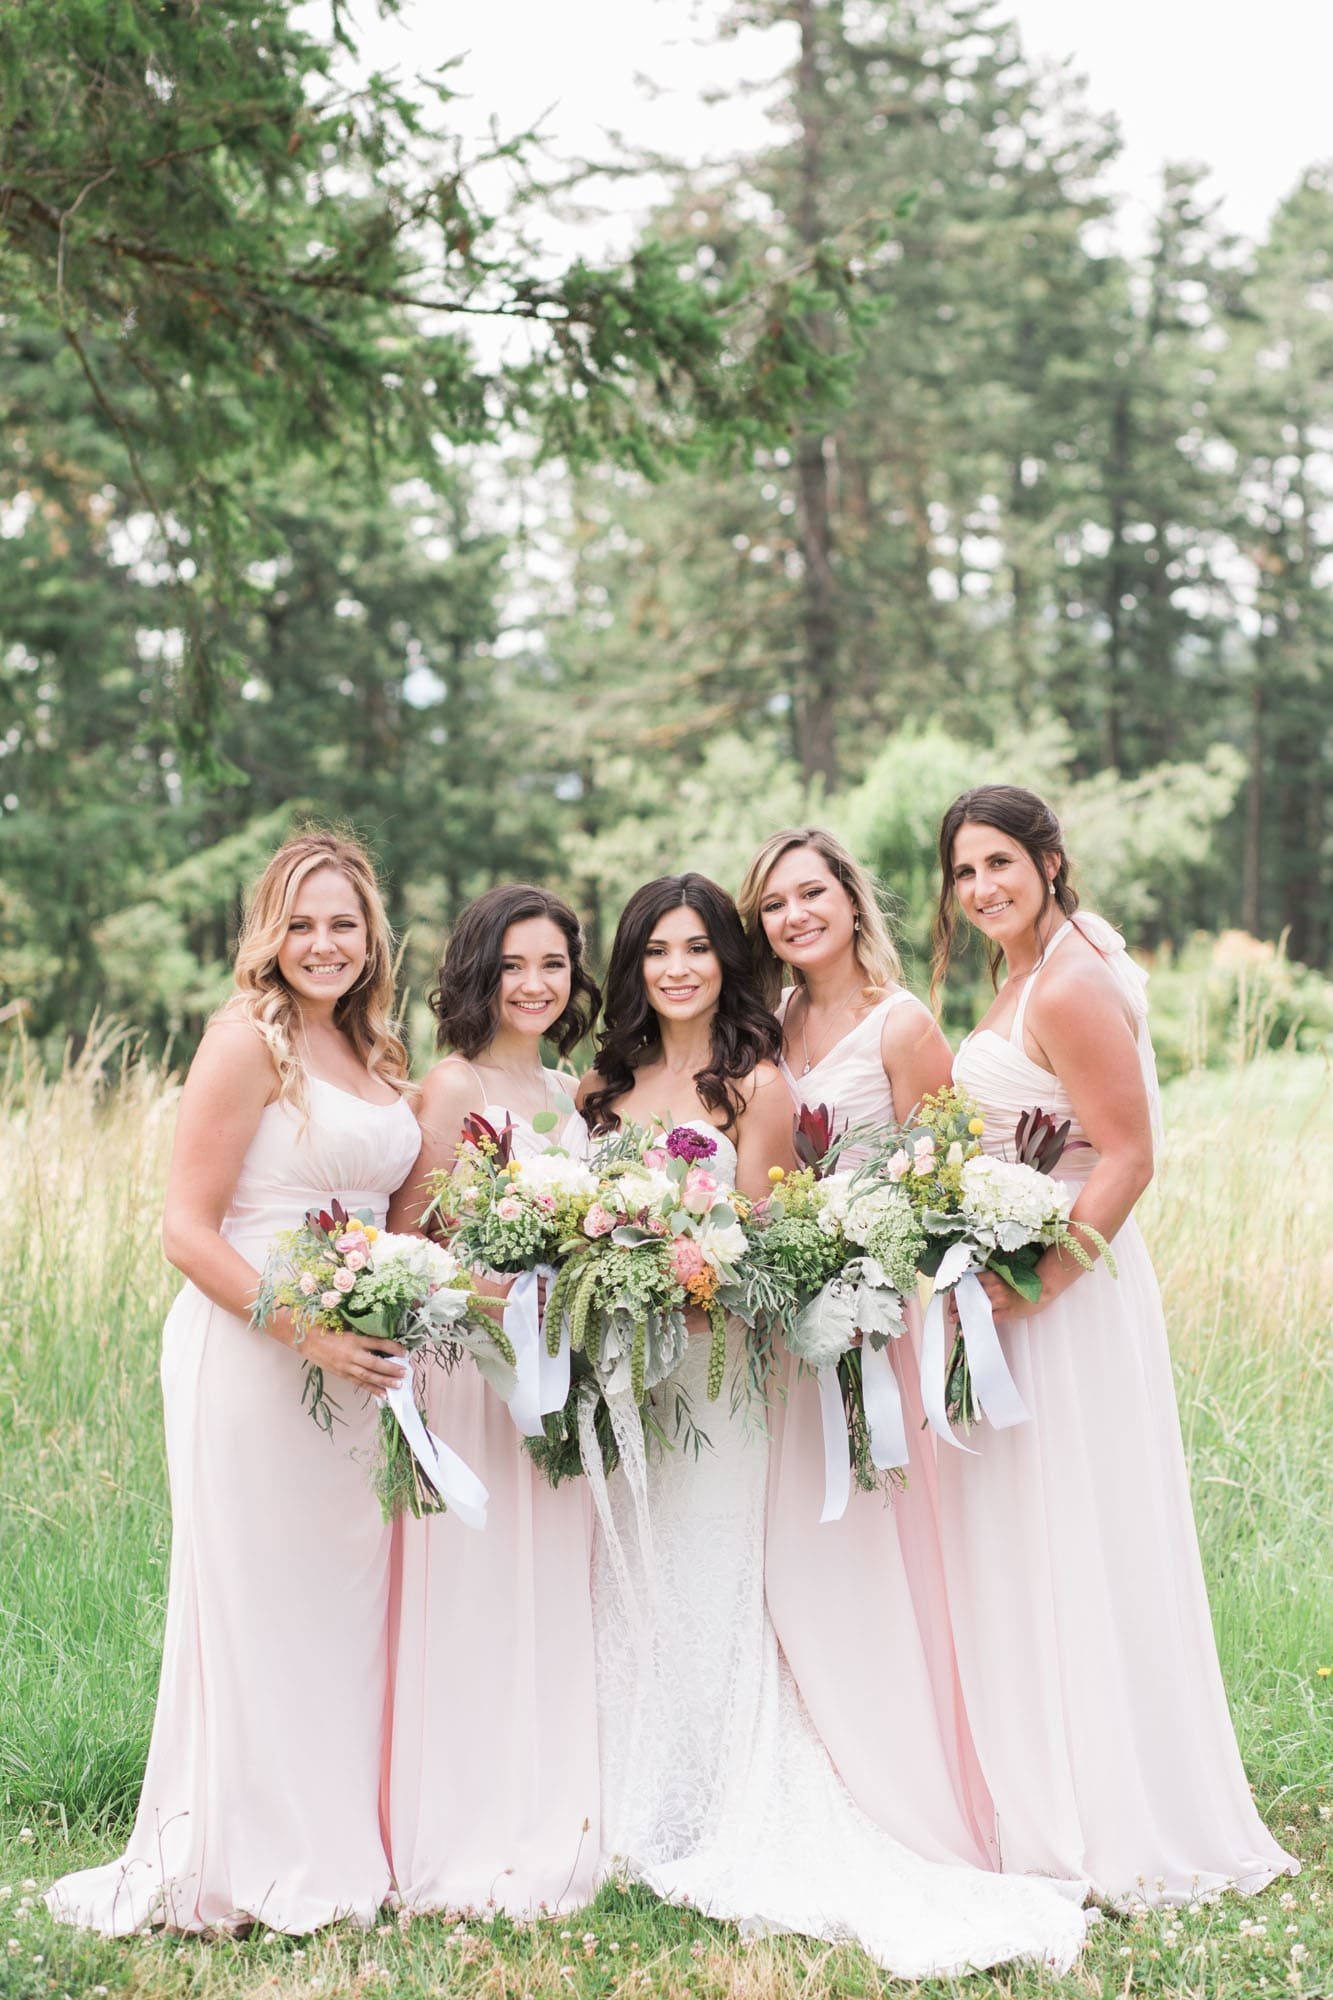 Bridesmaids pose for photos at an outdoor Oregon wedding venue